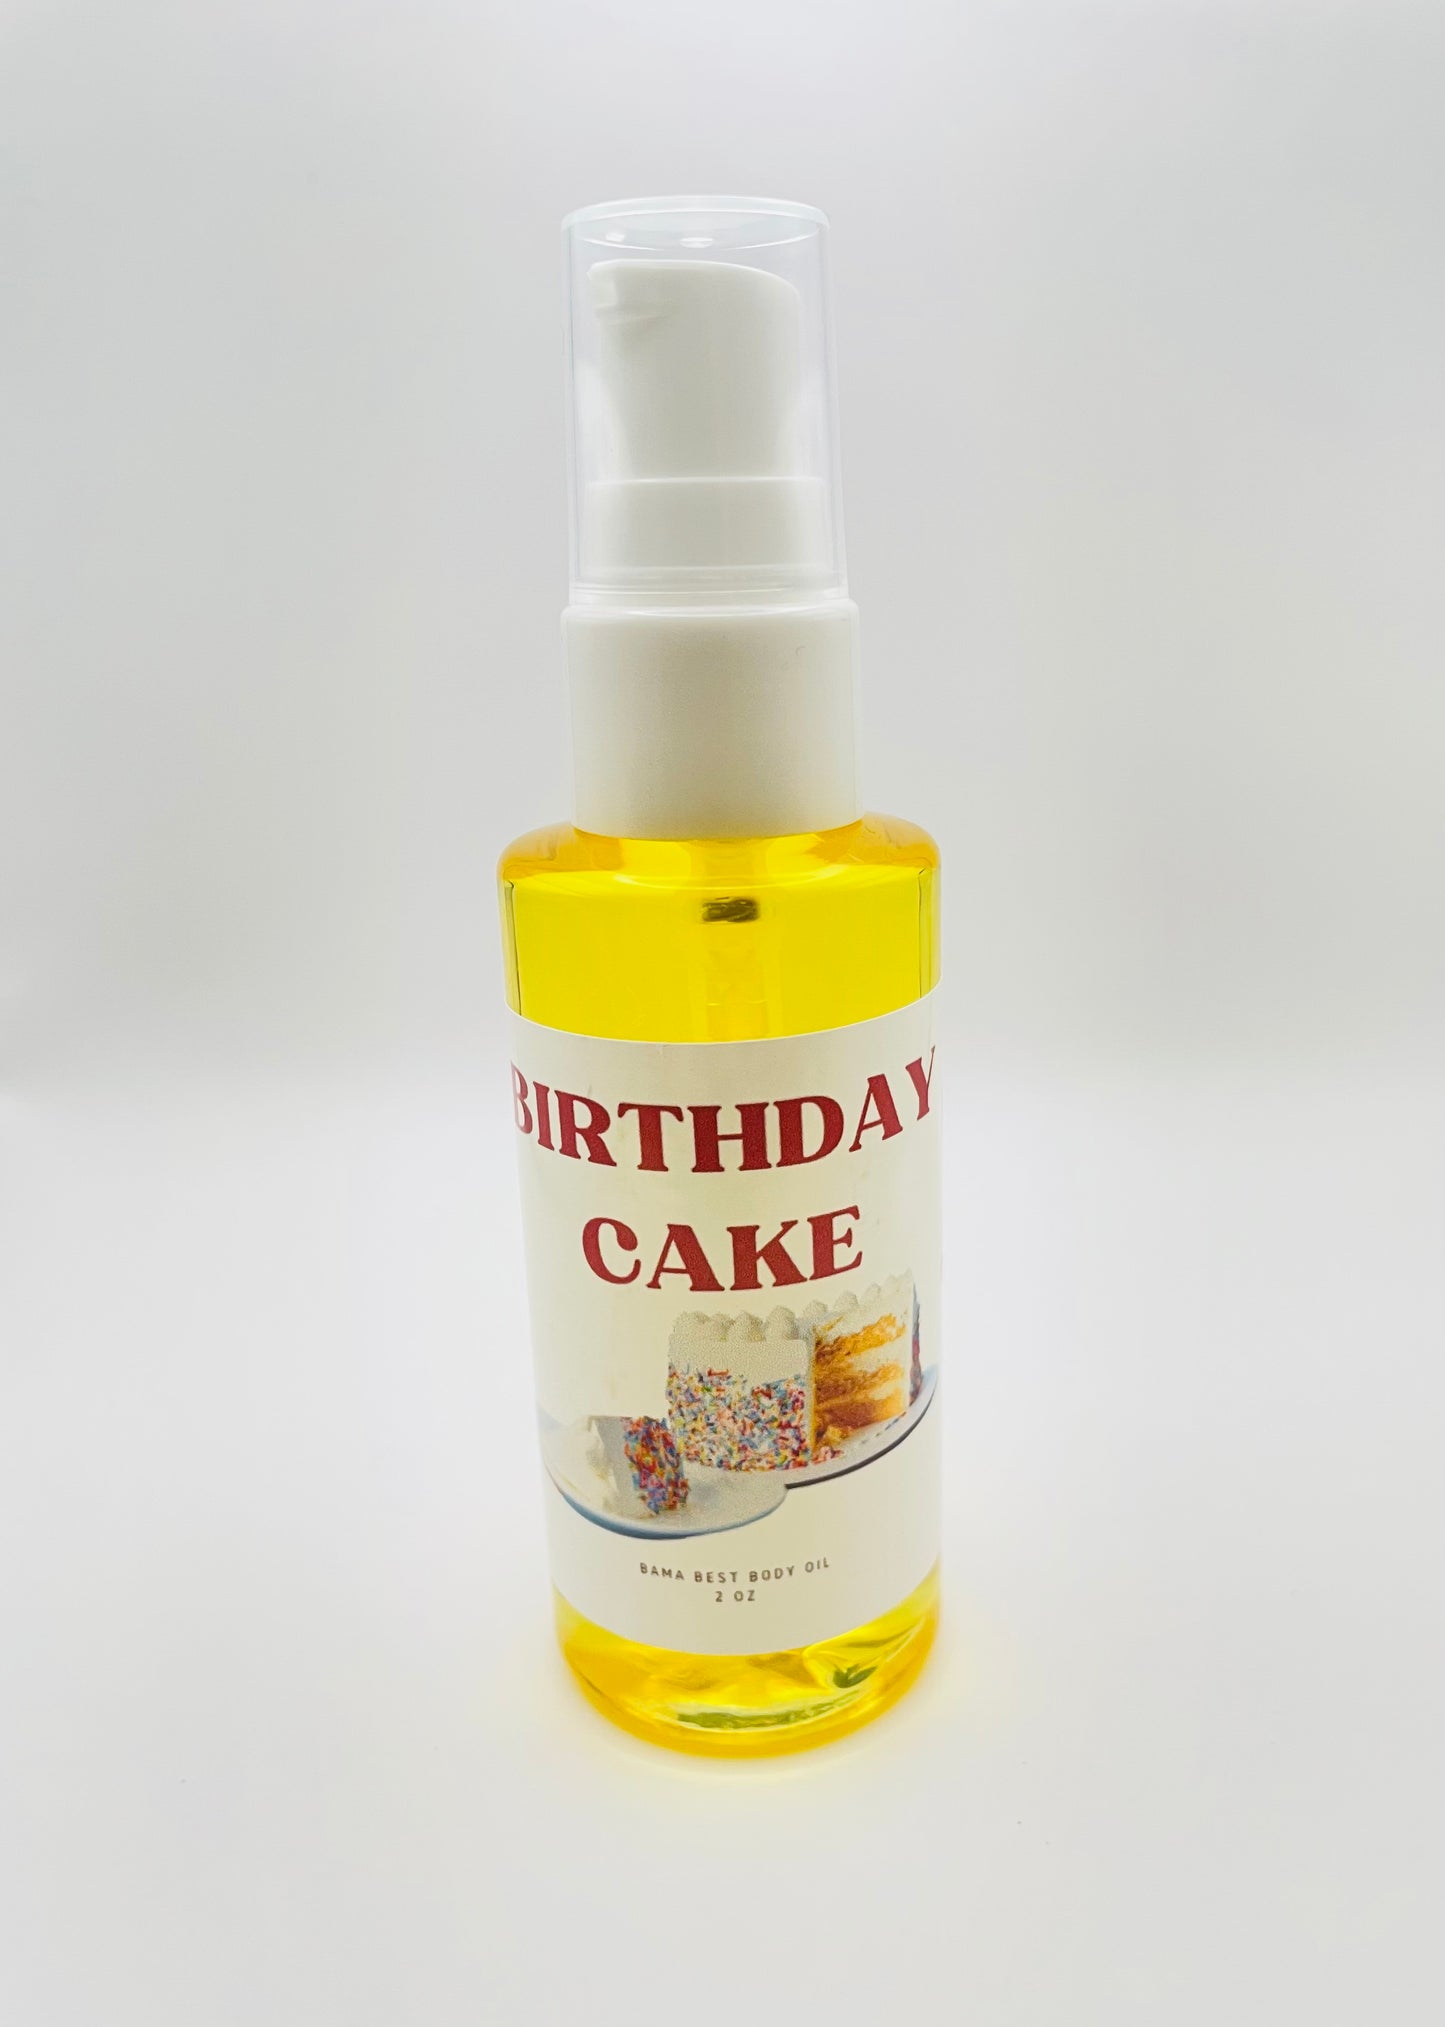 Birthday Cake Body Oil